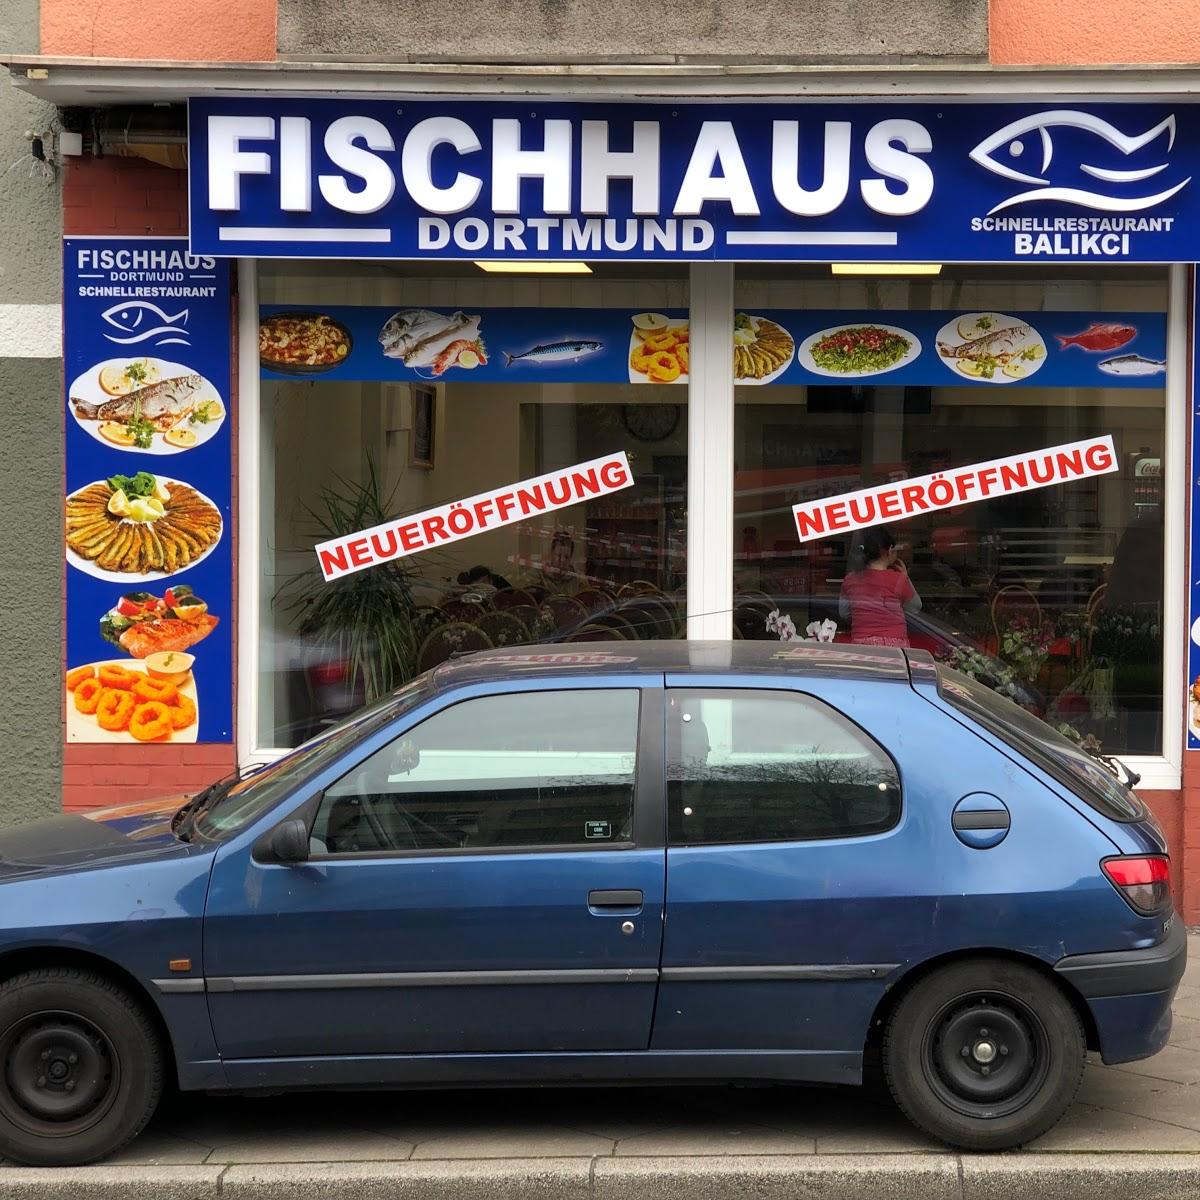 Restaurant "Fischhaus" in Dortmund